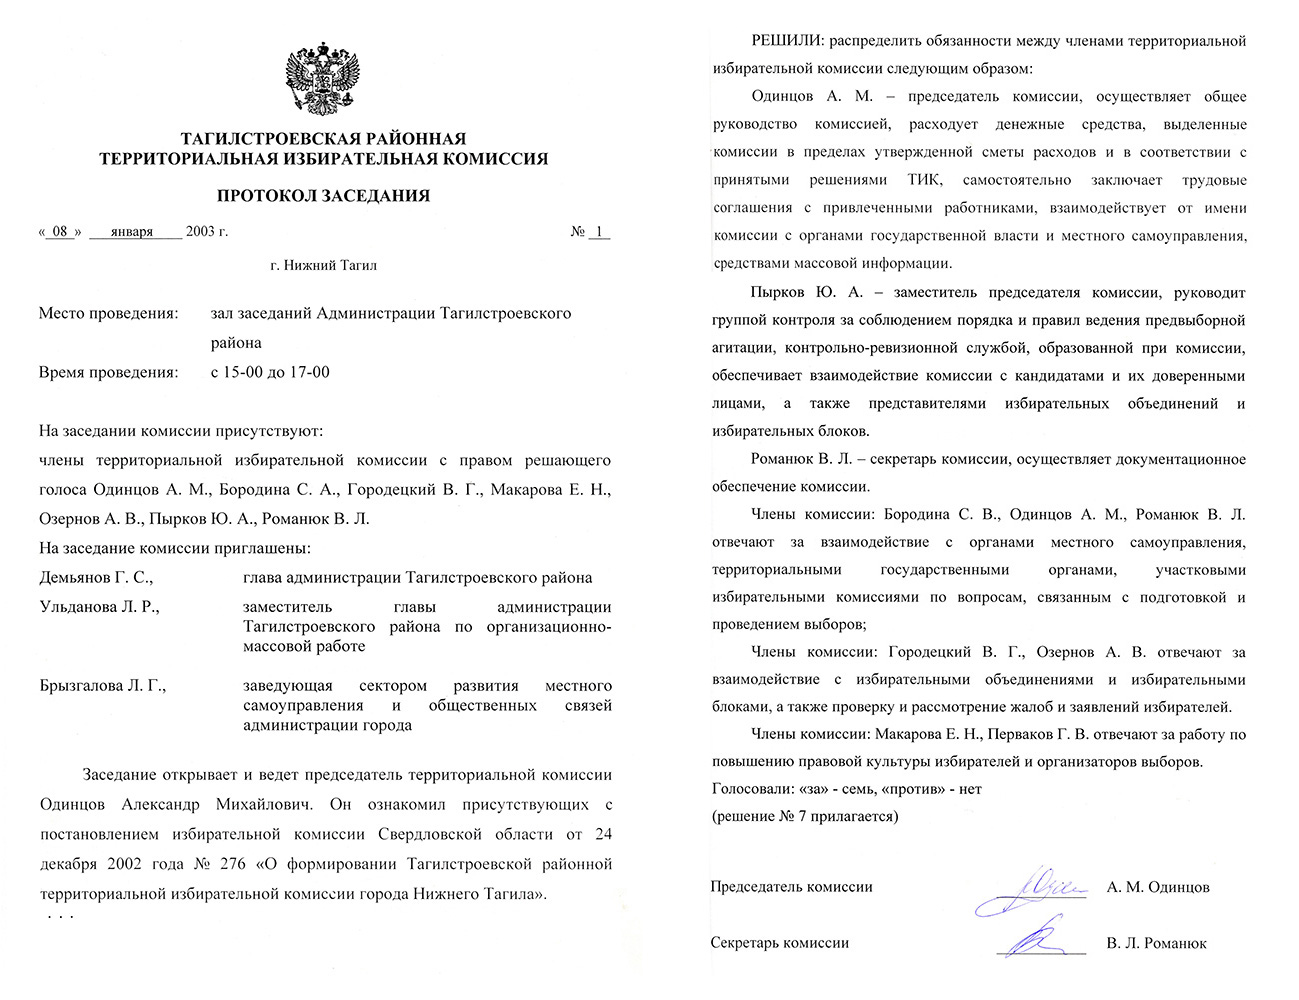 Протокол № 1 заседания Тагилстроевской районной территориальной комиссии от 8 января 2003 года. (НТГИА. Ф.634.Оп.2.Д.Л.1,4-5)